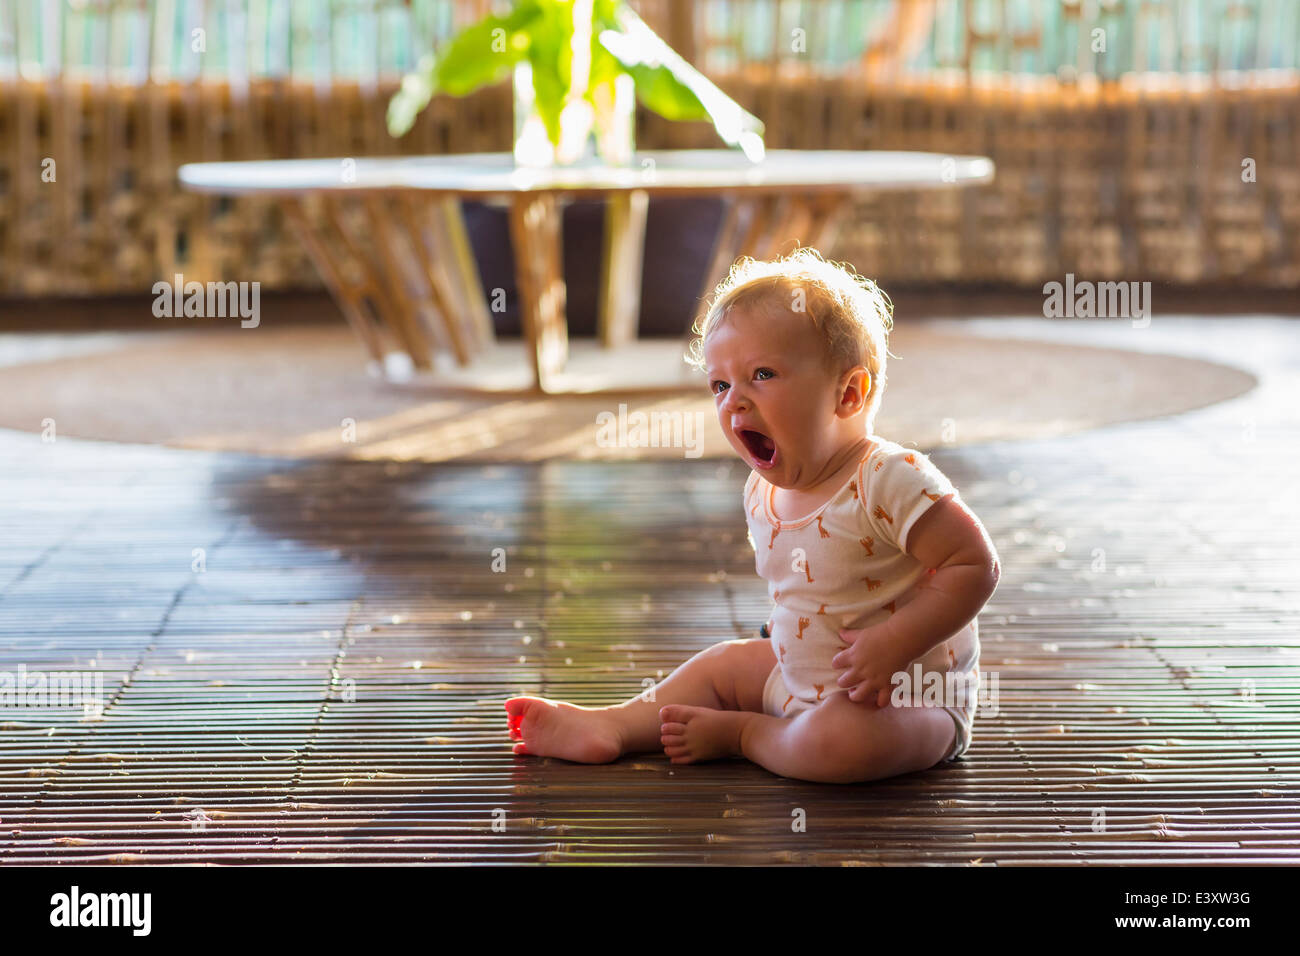 Mãe Ajuda Um Bebê Recém Nascido a Sentar. Criança Gritando Na Sala De Jogos  Em Um Chão De Espuma Mole Foto de Stock - Imagem de gritar, casa: 215291796